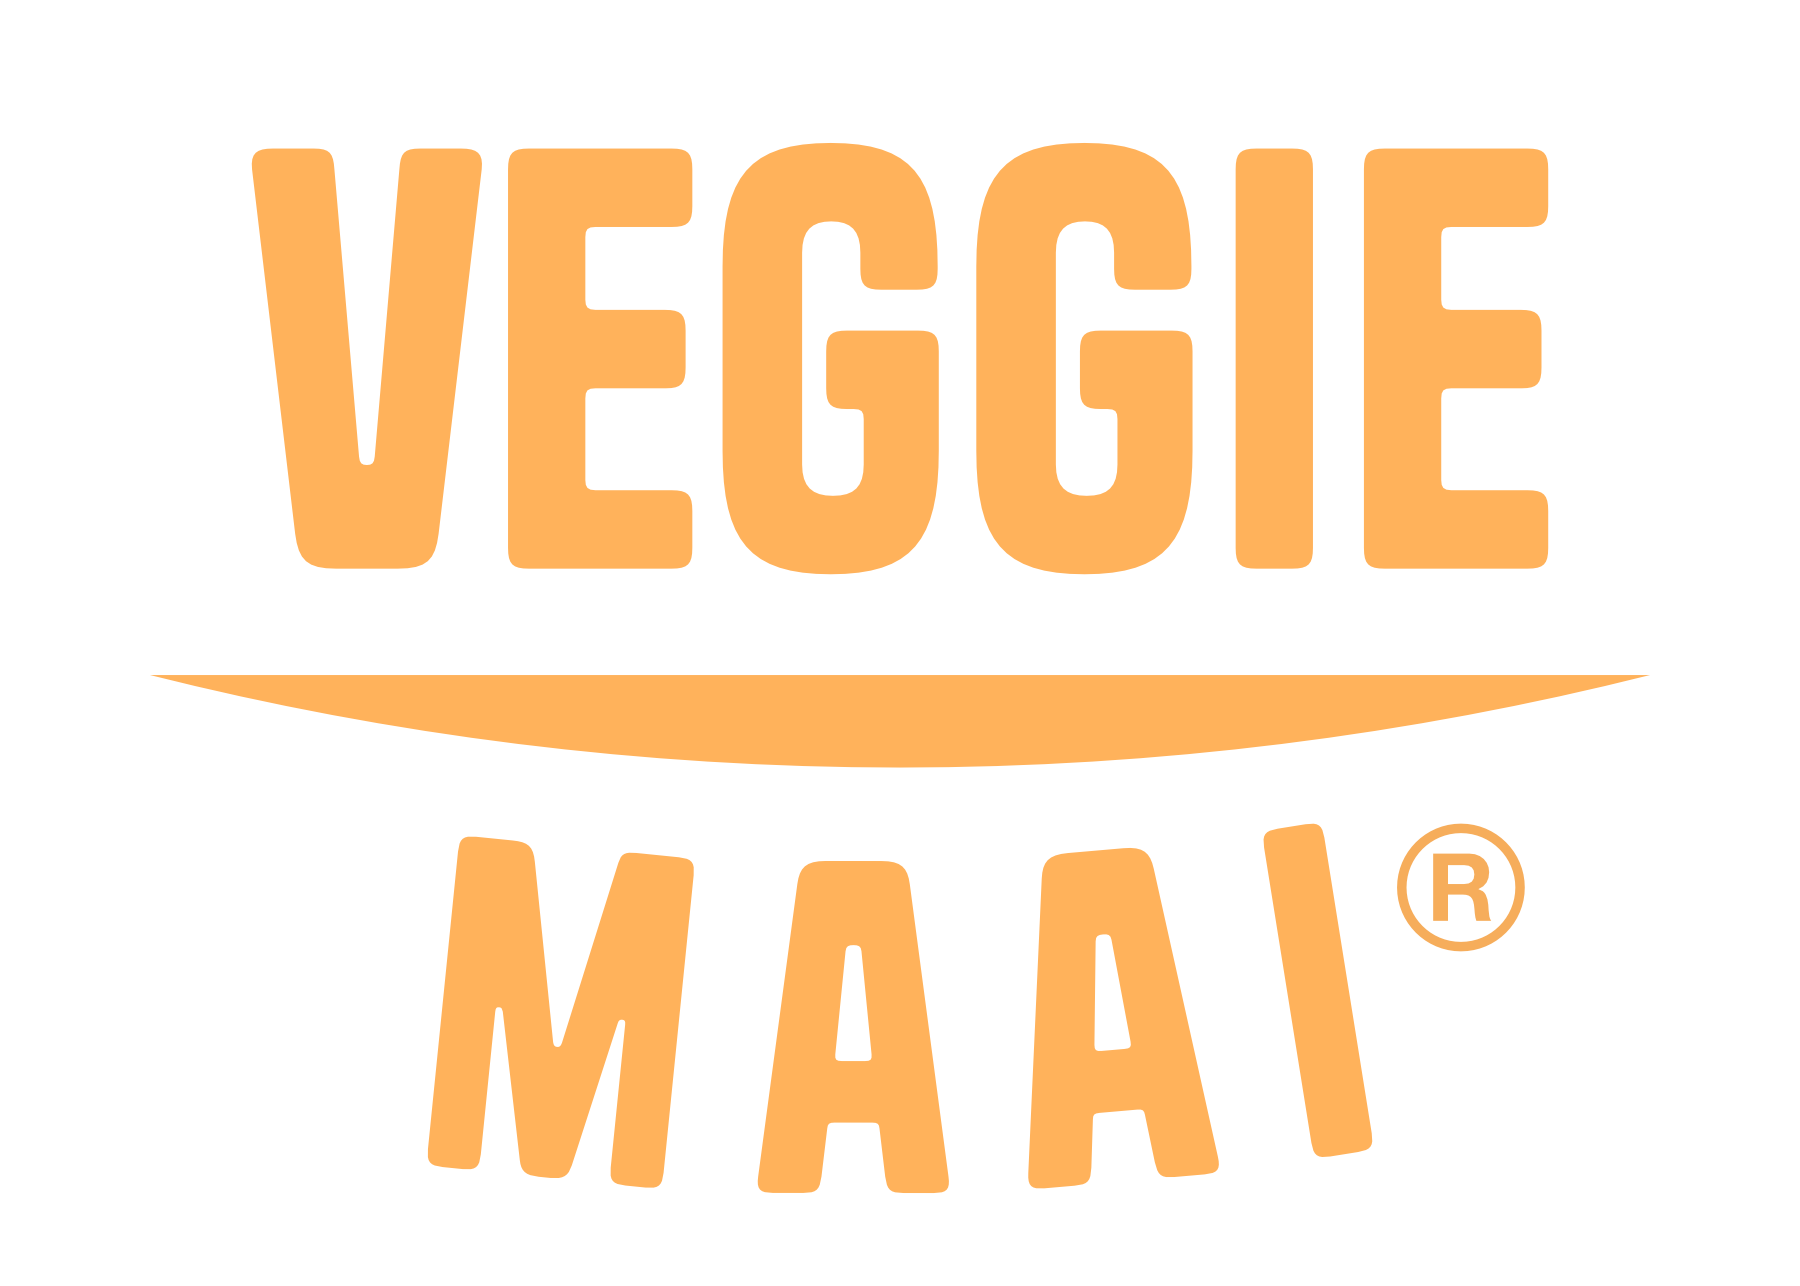 Veggie Maai